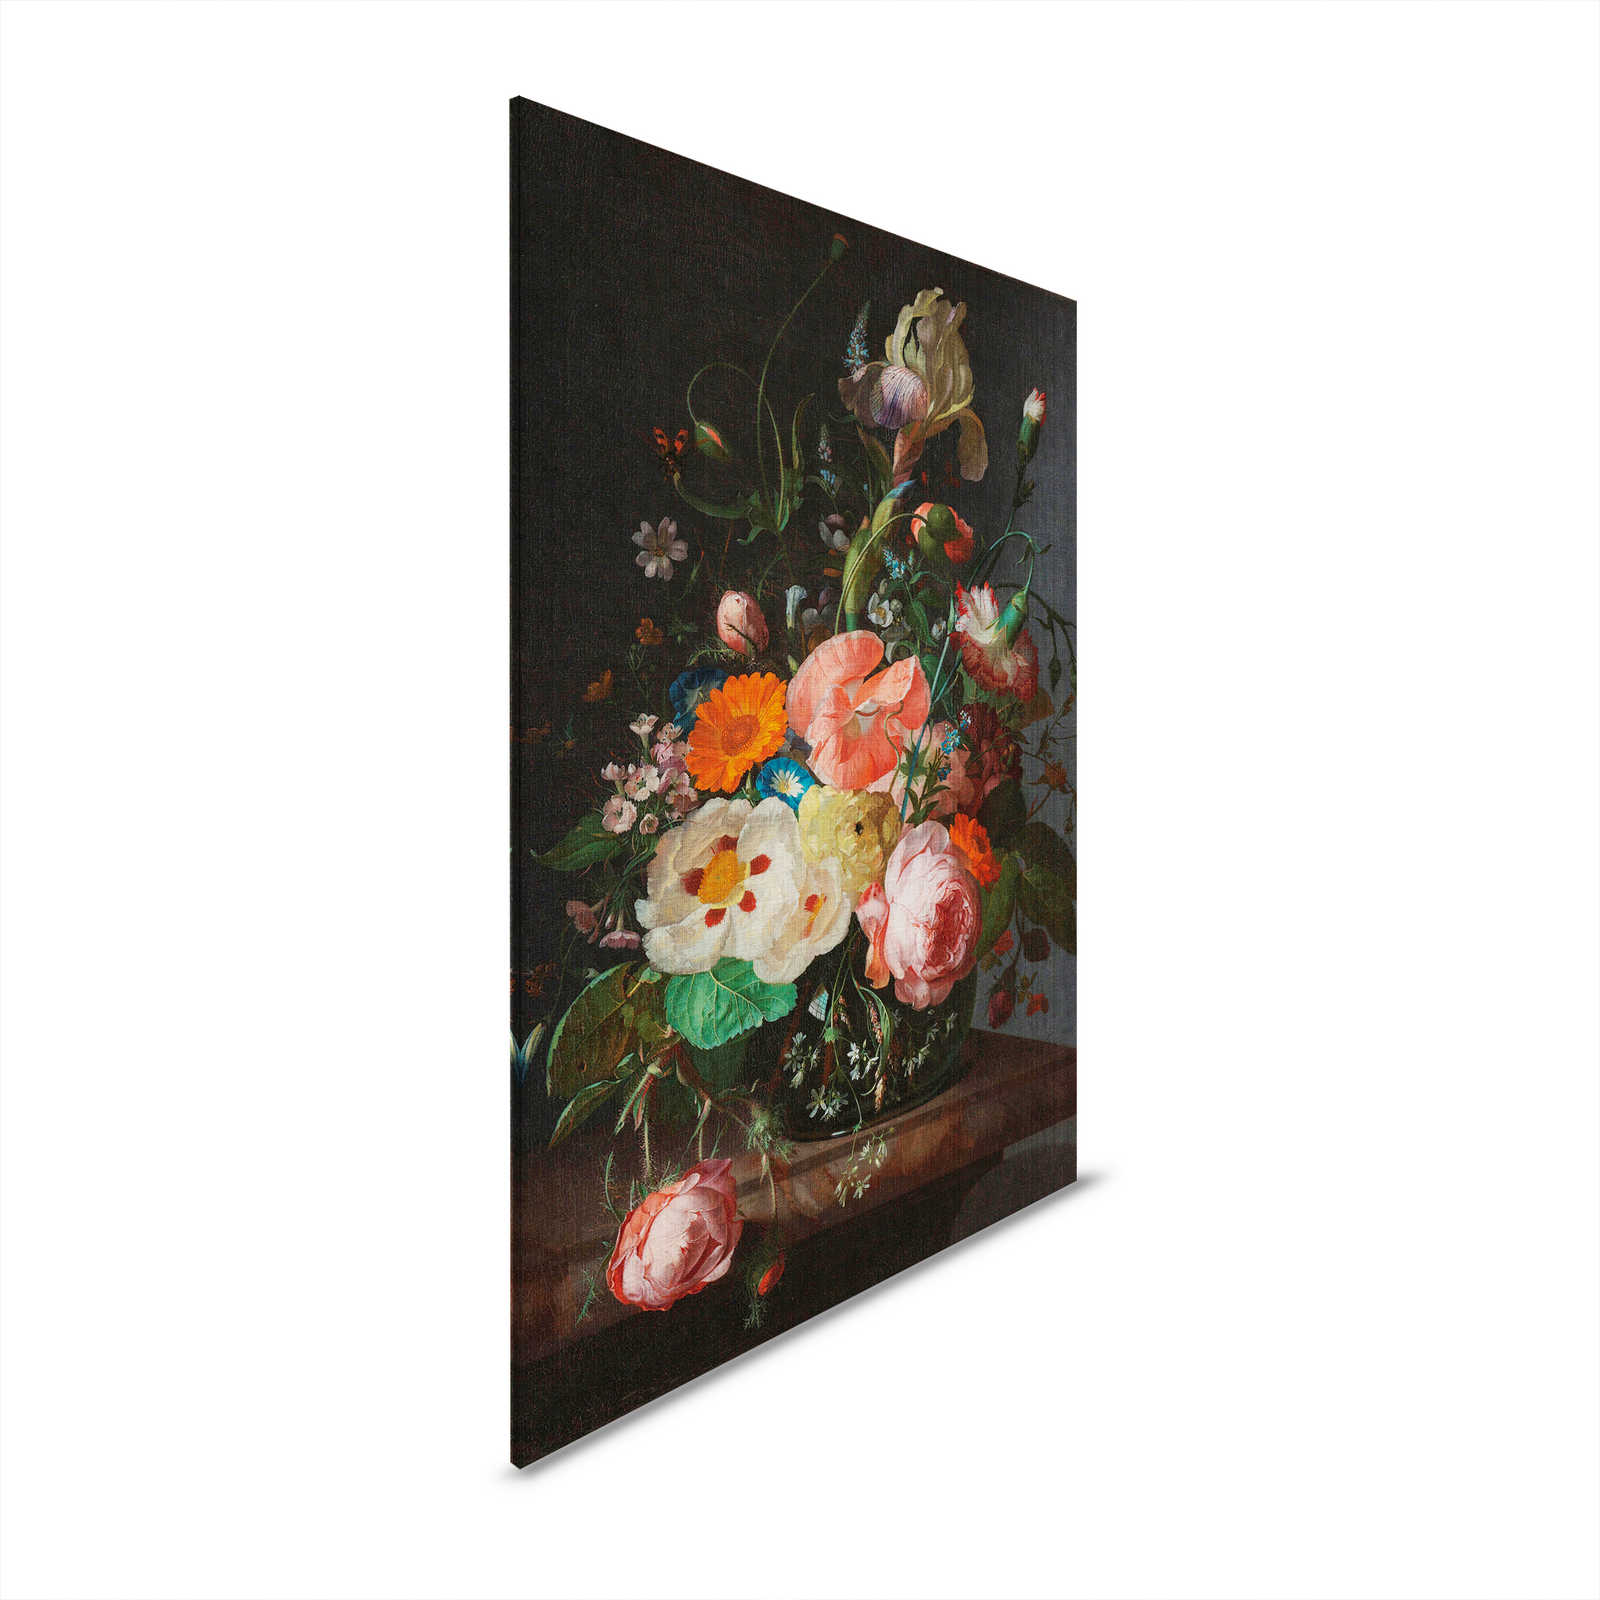 Artists Studio 3 - Peinture sur toile de fleurs Naturel morte - 0,80 m x 1,20 m
